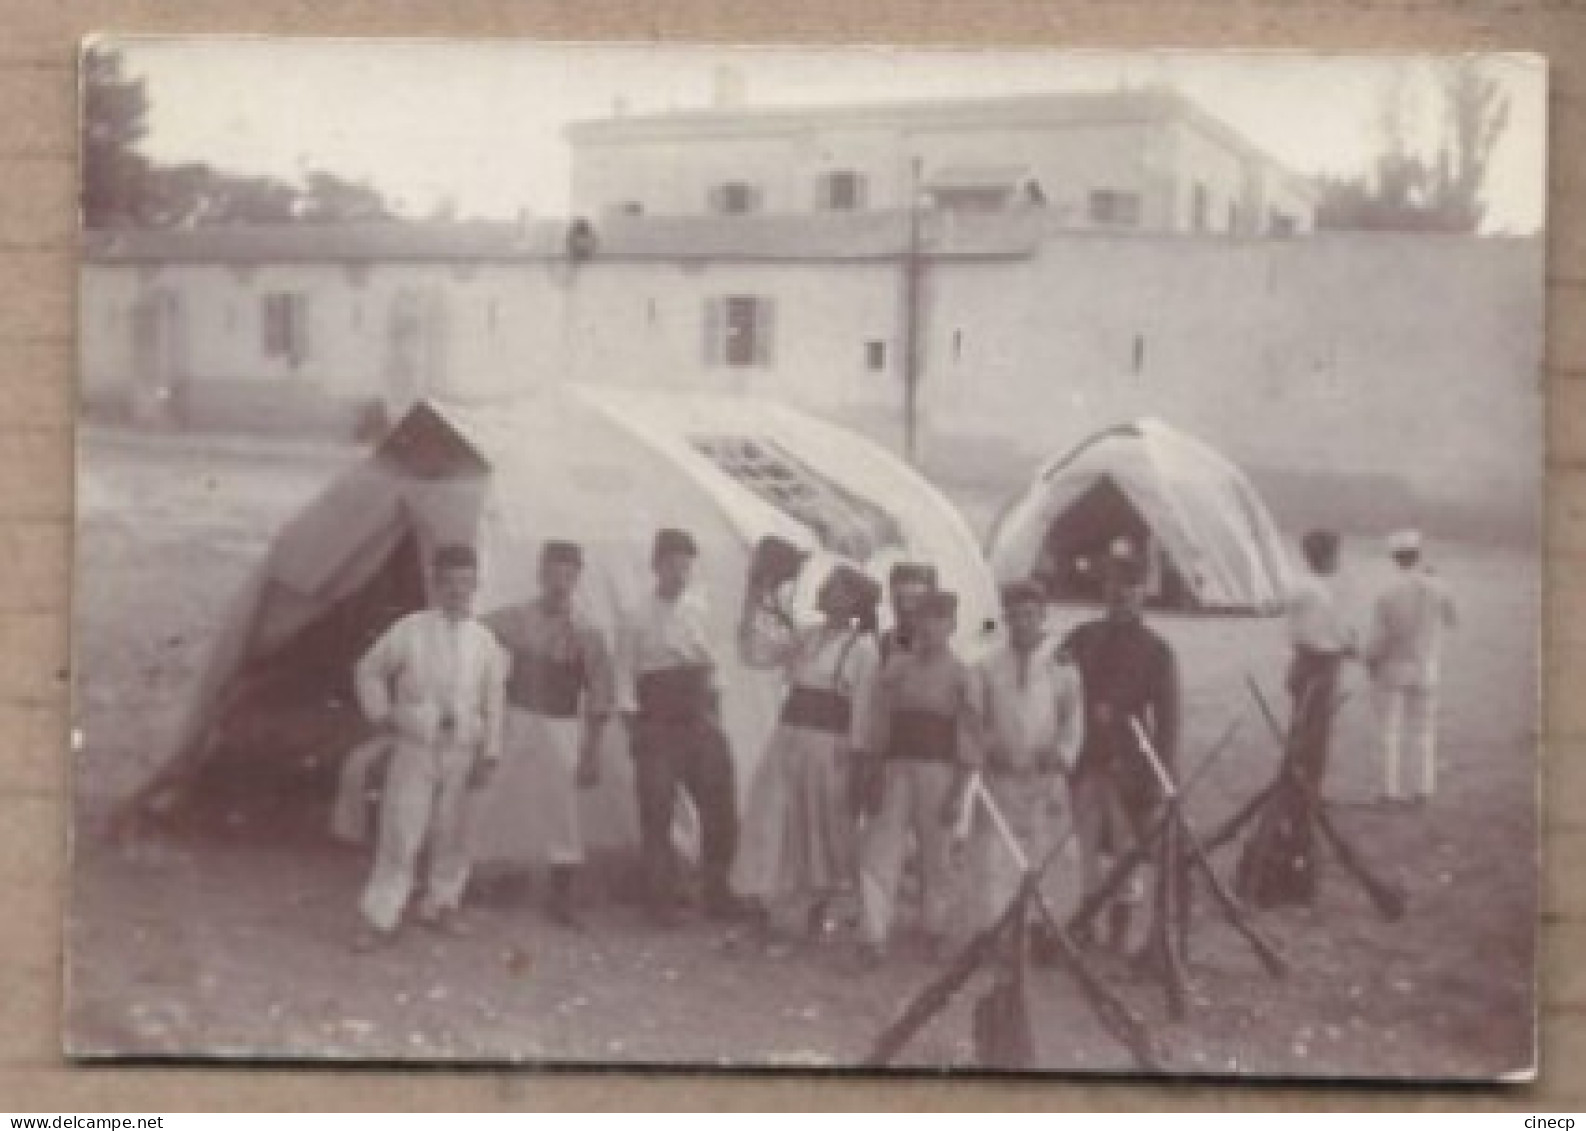 PHOTOGRAPHIE GUERRE 14 18 - Souvenir De La Mobilisation Aout 1914 - Régiment ? AFRIQUE DU NORD - ALGERIE ? - War 1914-18